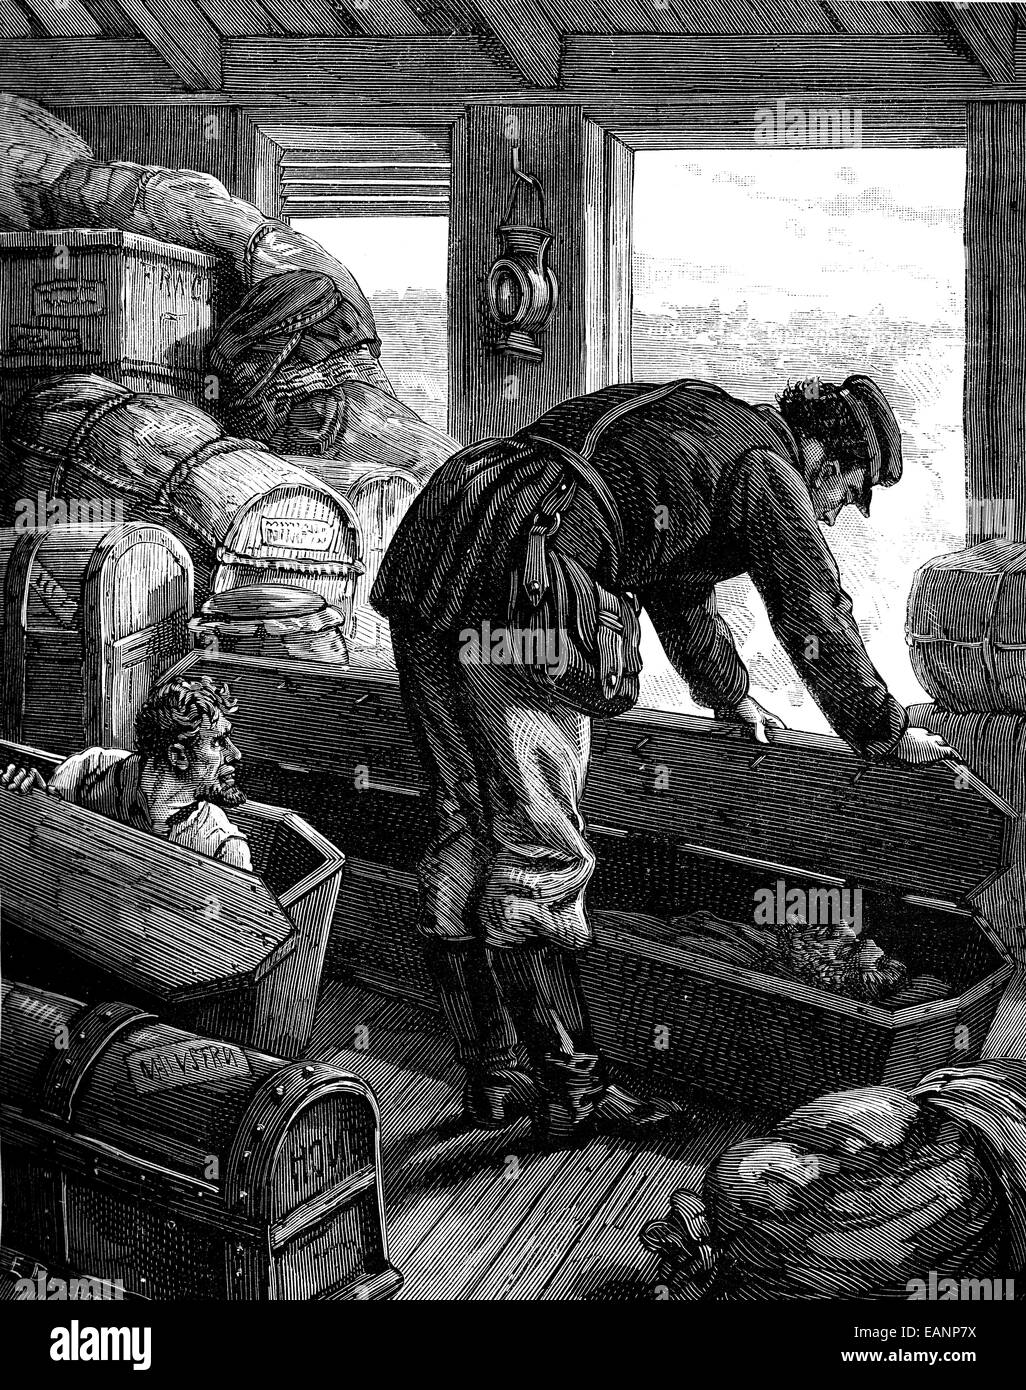 In der amerikanischen Eisenbahn. Ich hob den Sarg, Vintage gravierten Abbildung. Journal des Voyages, Reise-Journal (1879 / 80). Stockfoto